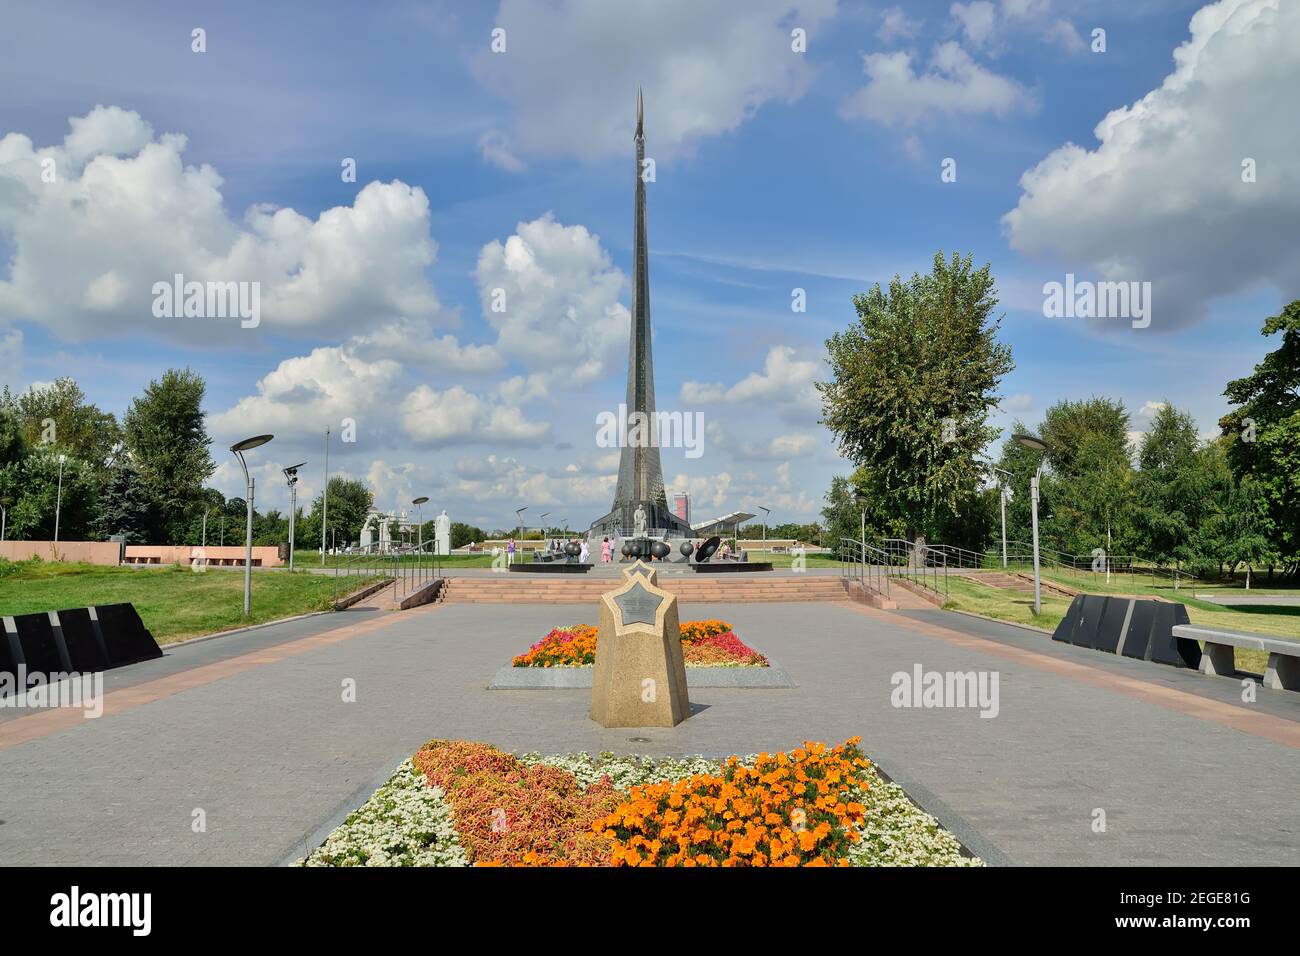 Moskau, Russland - 25. august 2020: Blick auf die Gasse der Kosmonauten und das Denkmal für die Eroberer des Raums im Museum für Kosmonauten. Moskau, R Stockfoto